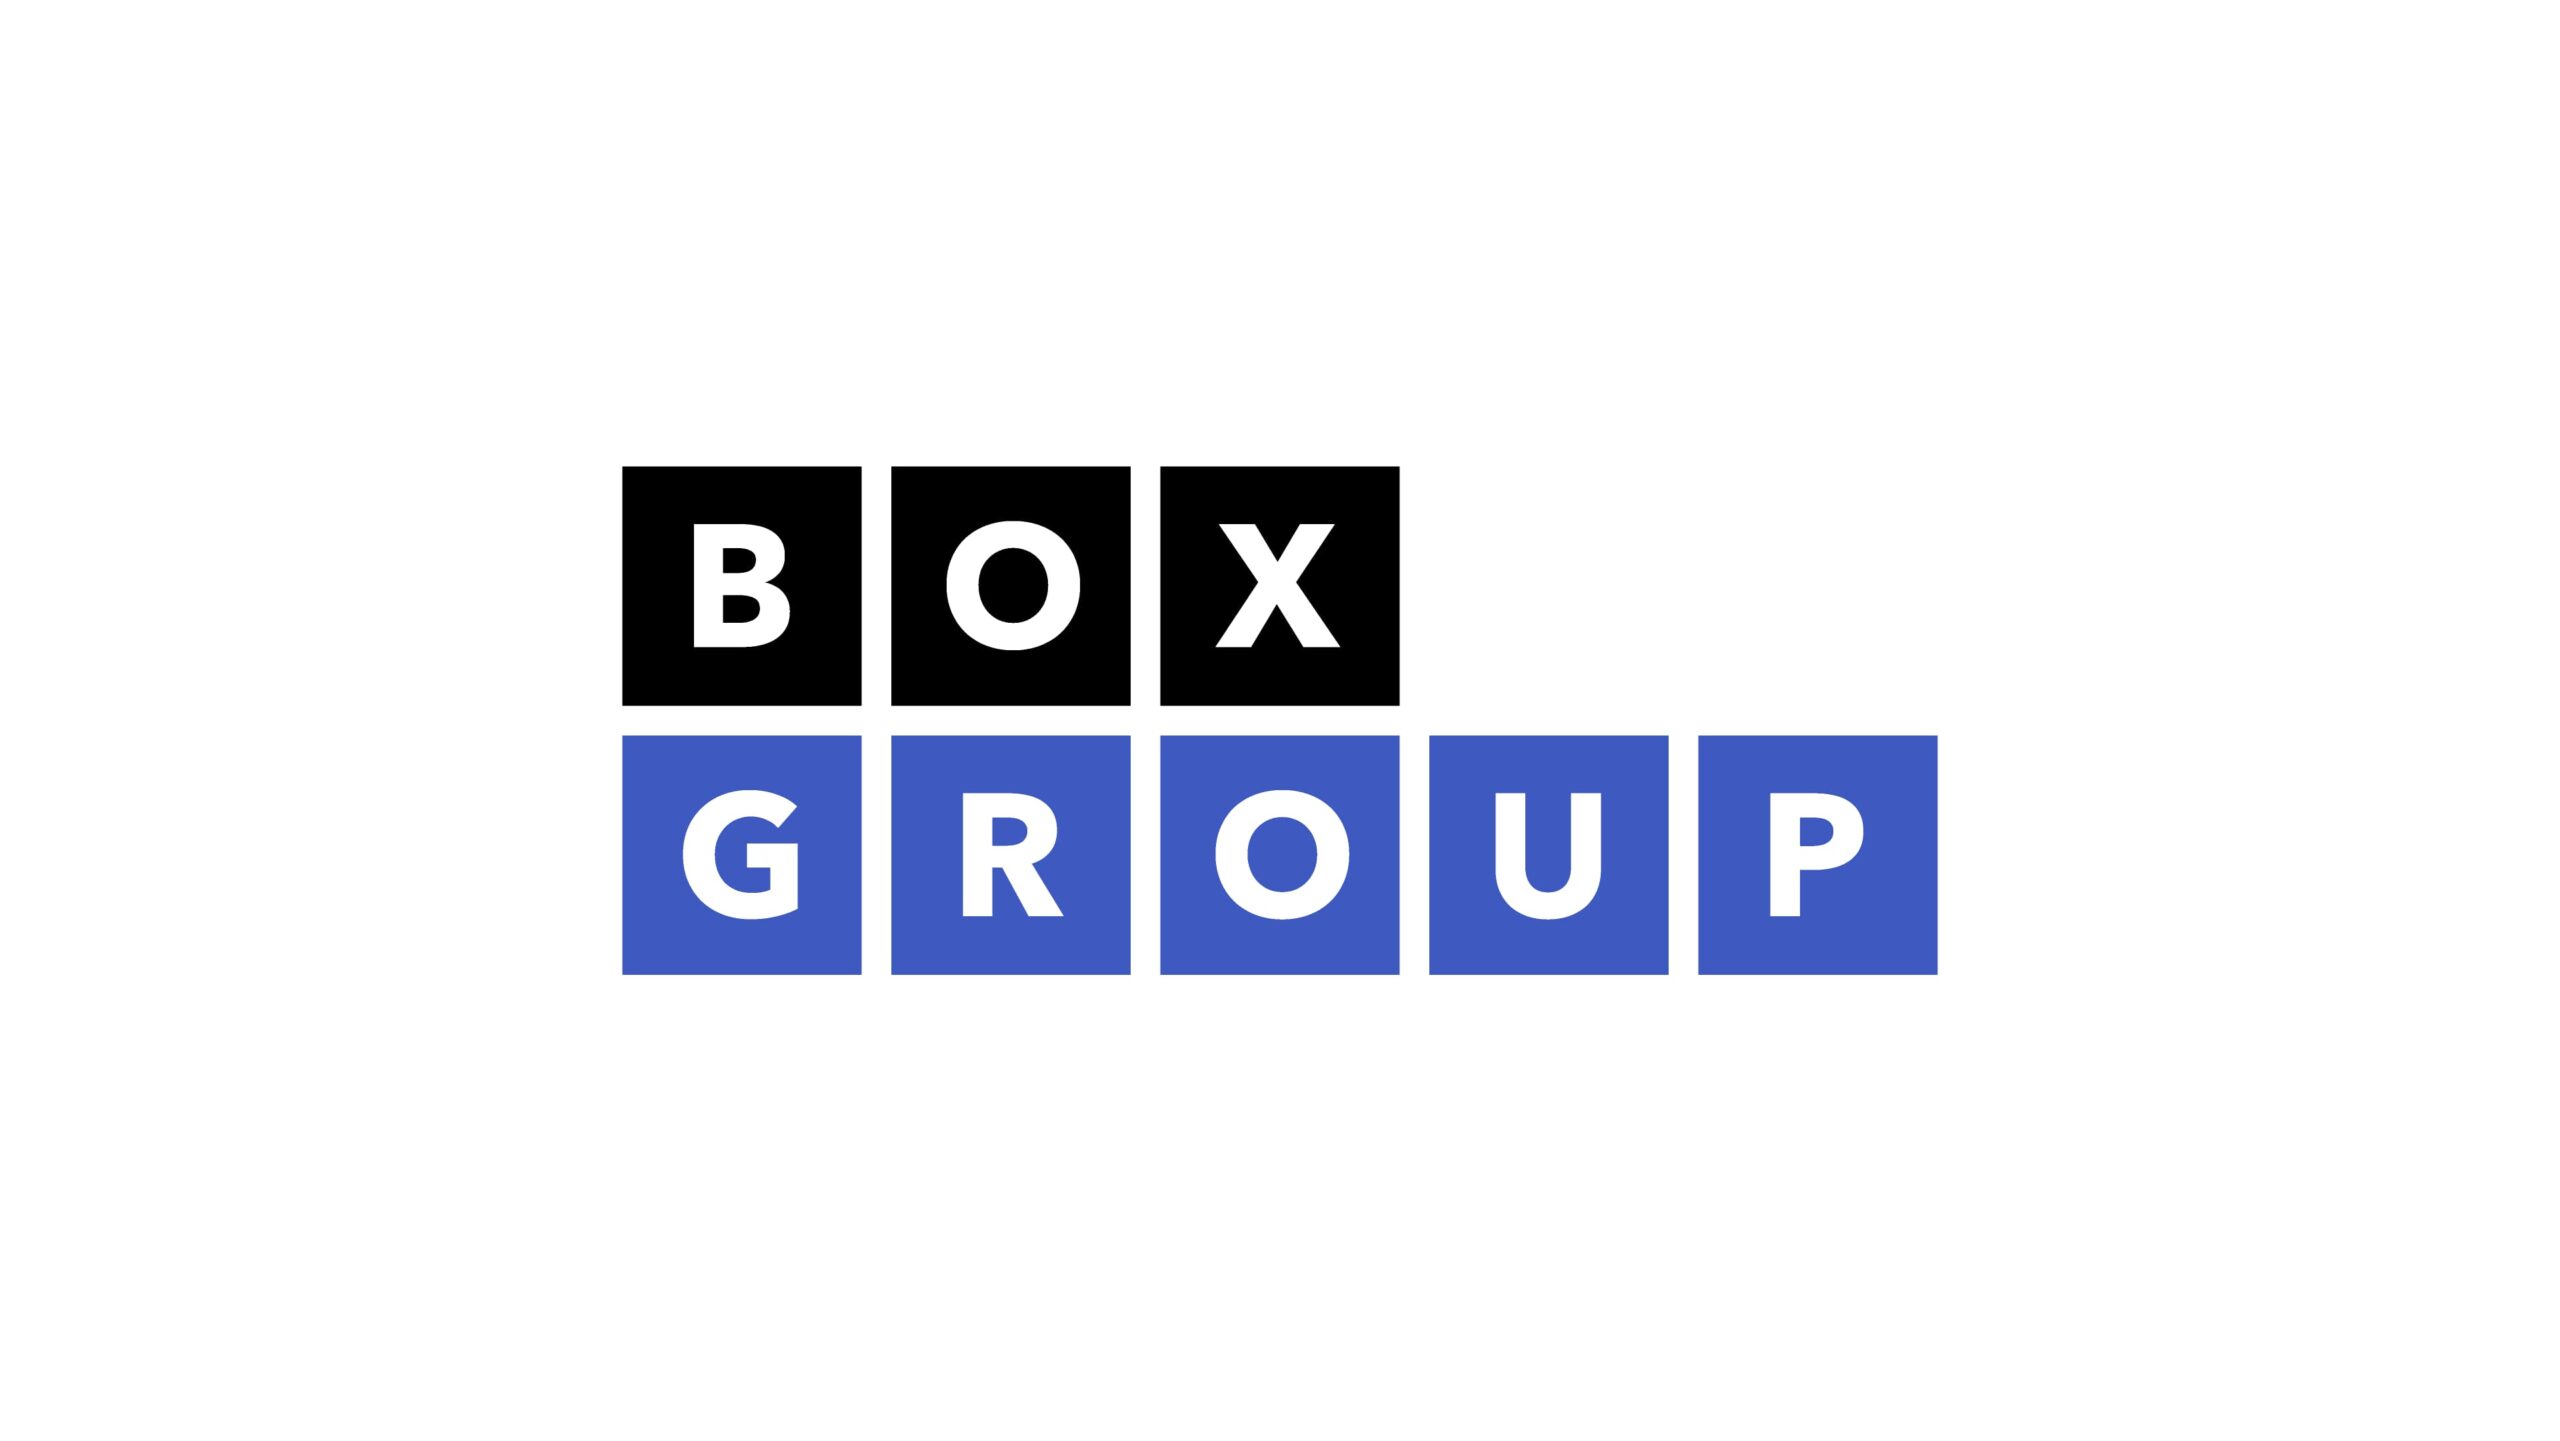 BoxGroup、アーリーステージの新興企業を支援する2つのファンドのために4億2500万ドルを調達